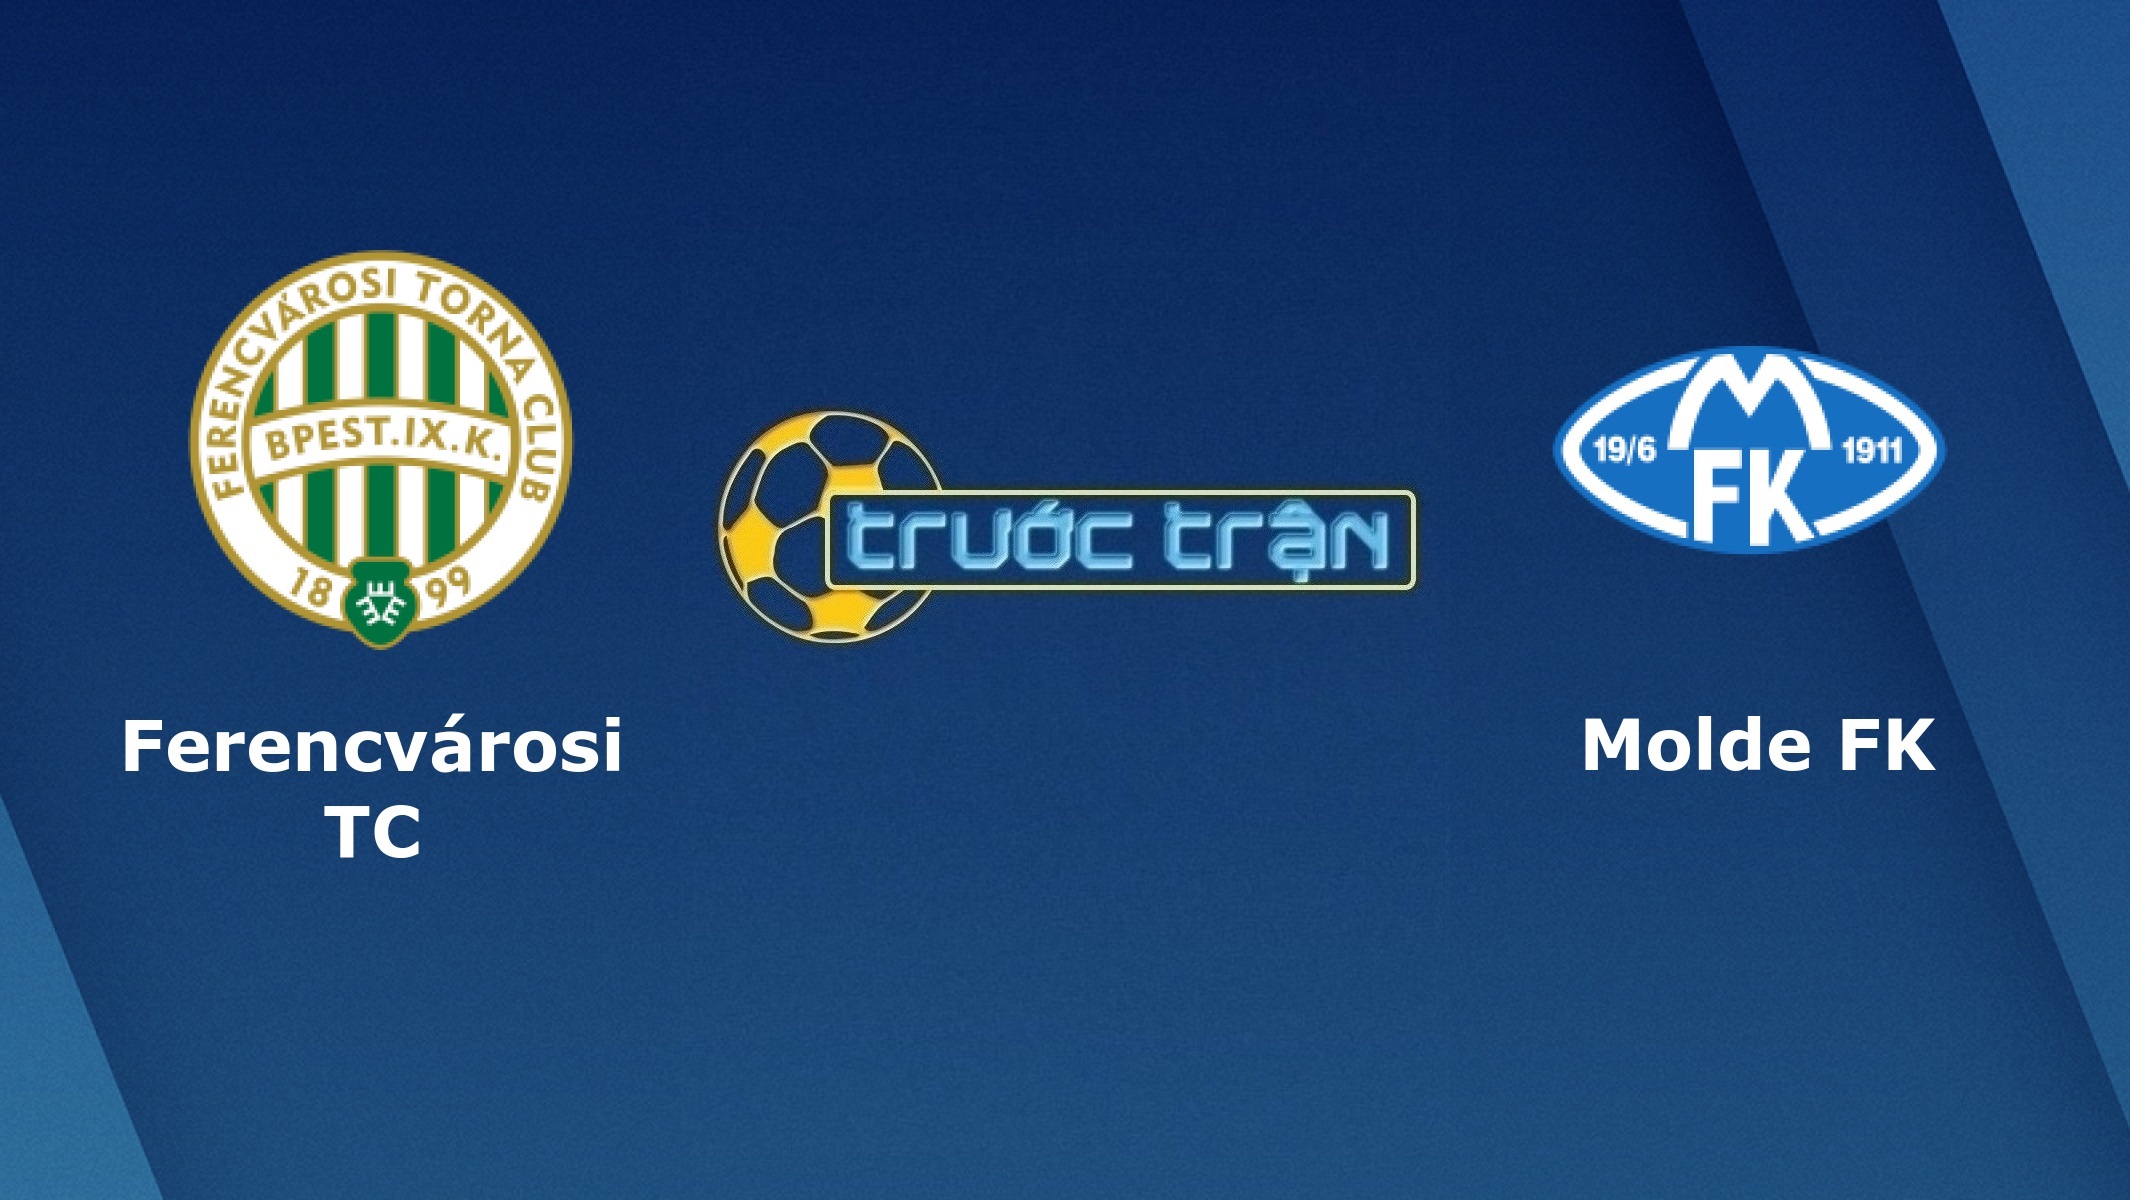 Ferencvarosi TC vs Molde – Tip kèo bóng đá hôm nay – 30/09